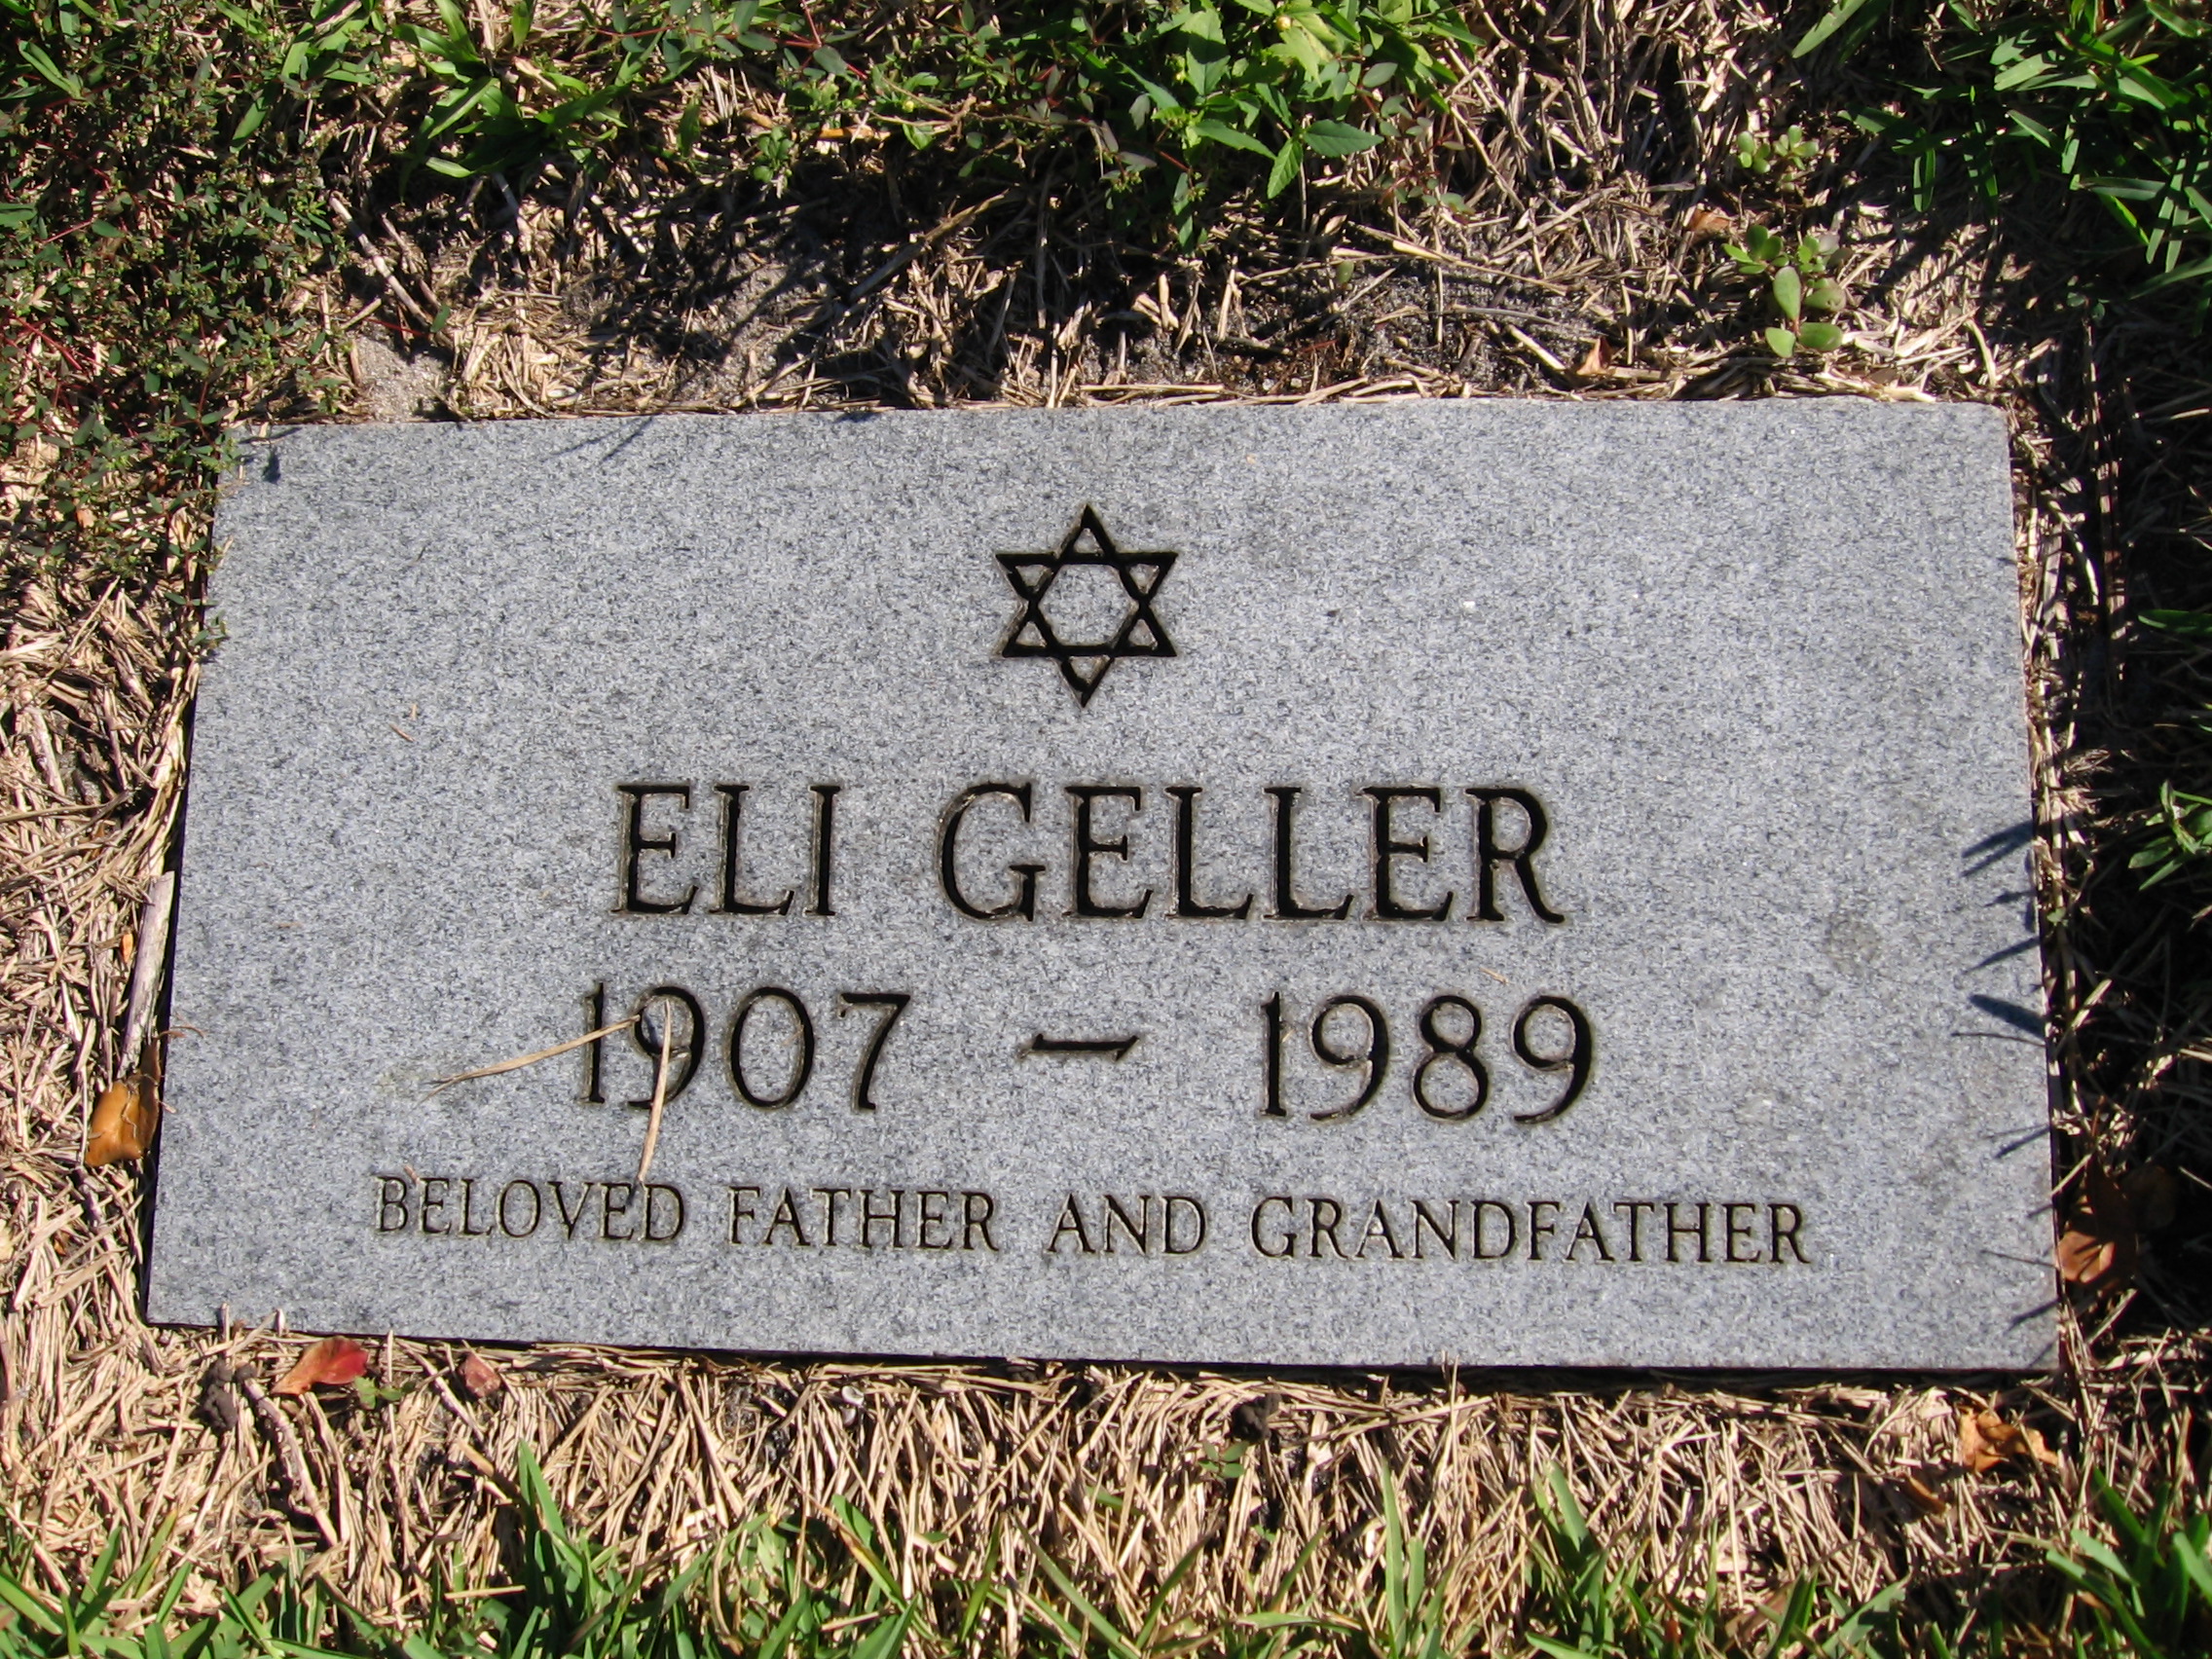 Eli Geller